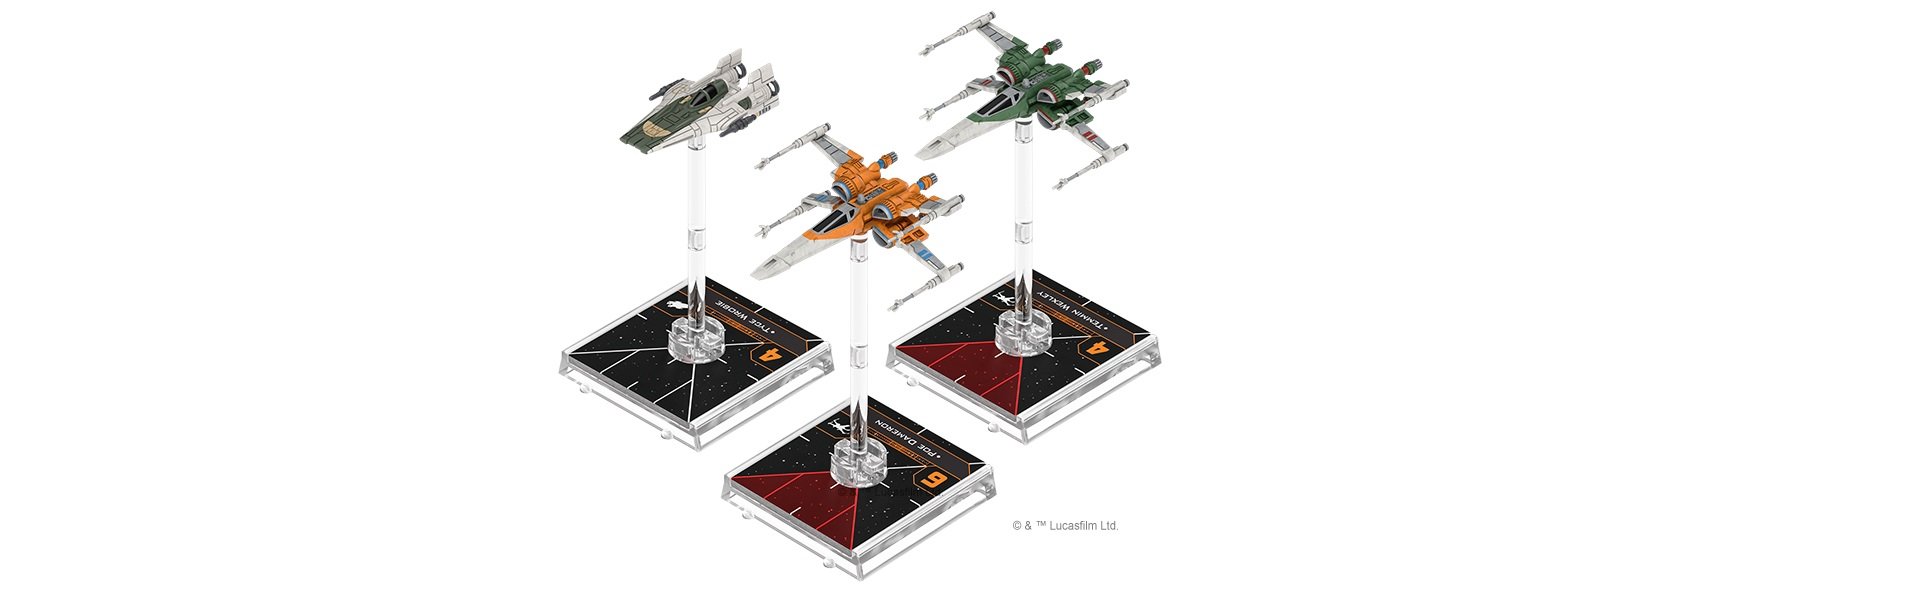 Star Wars X-Wing Miniatures.